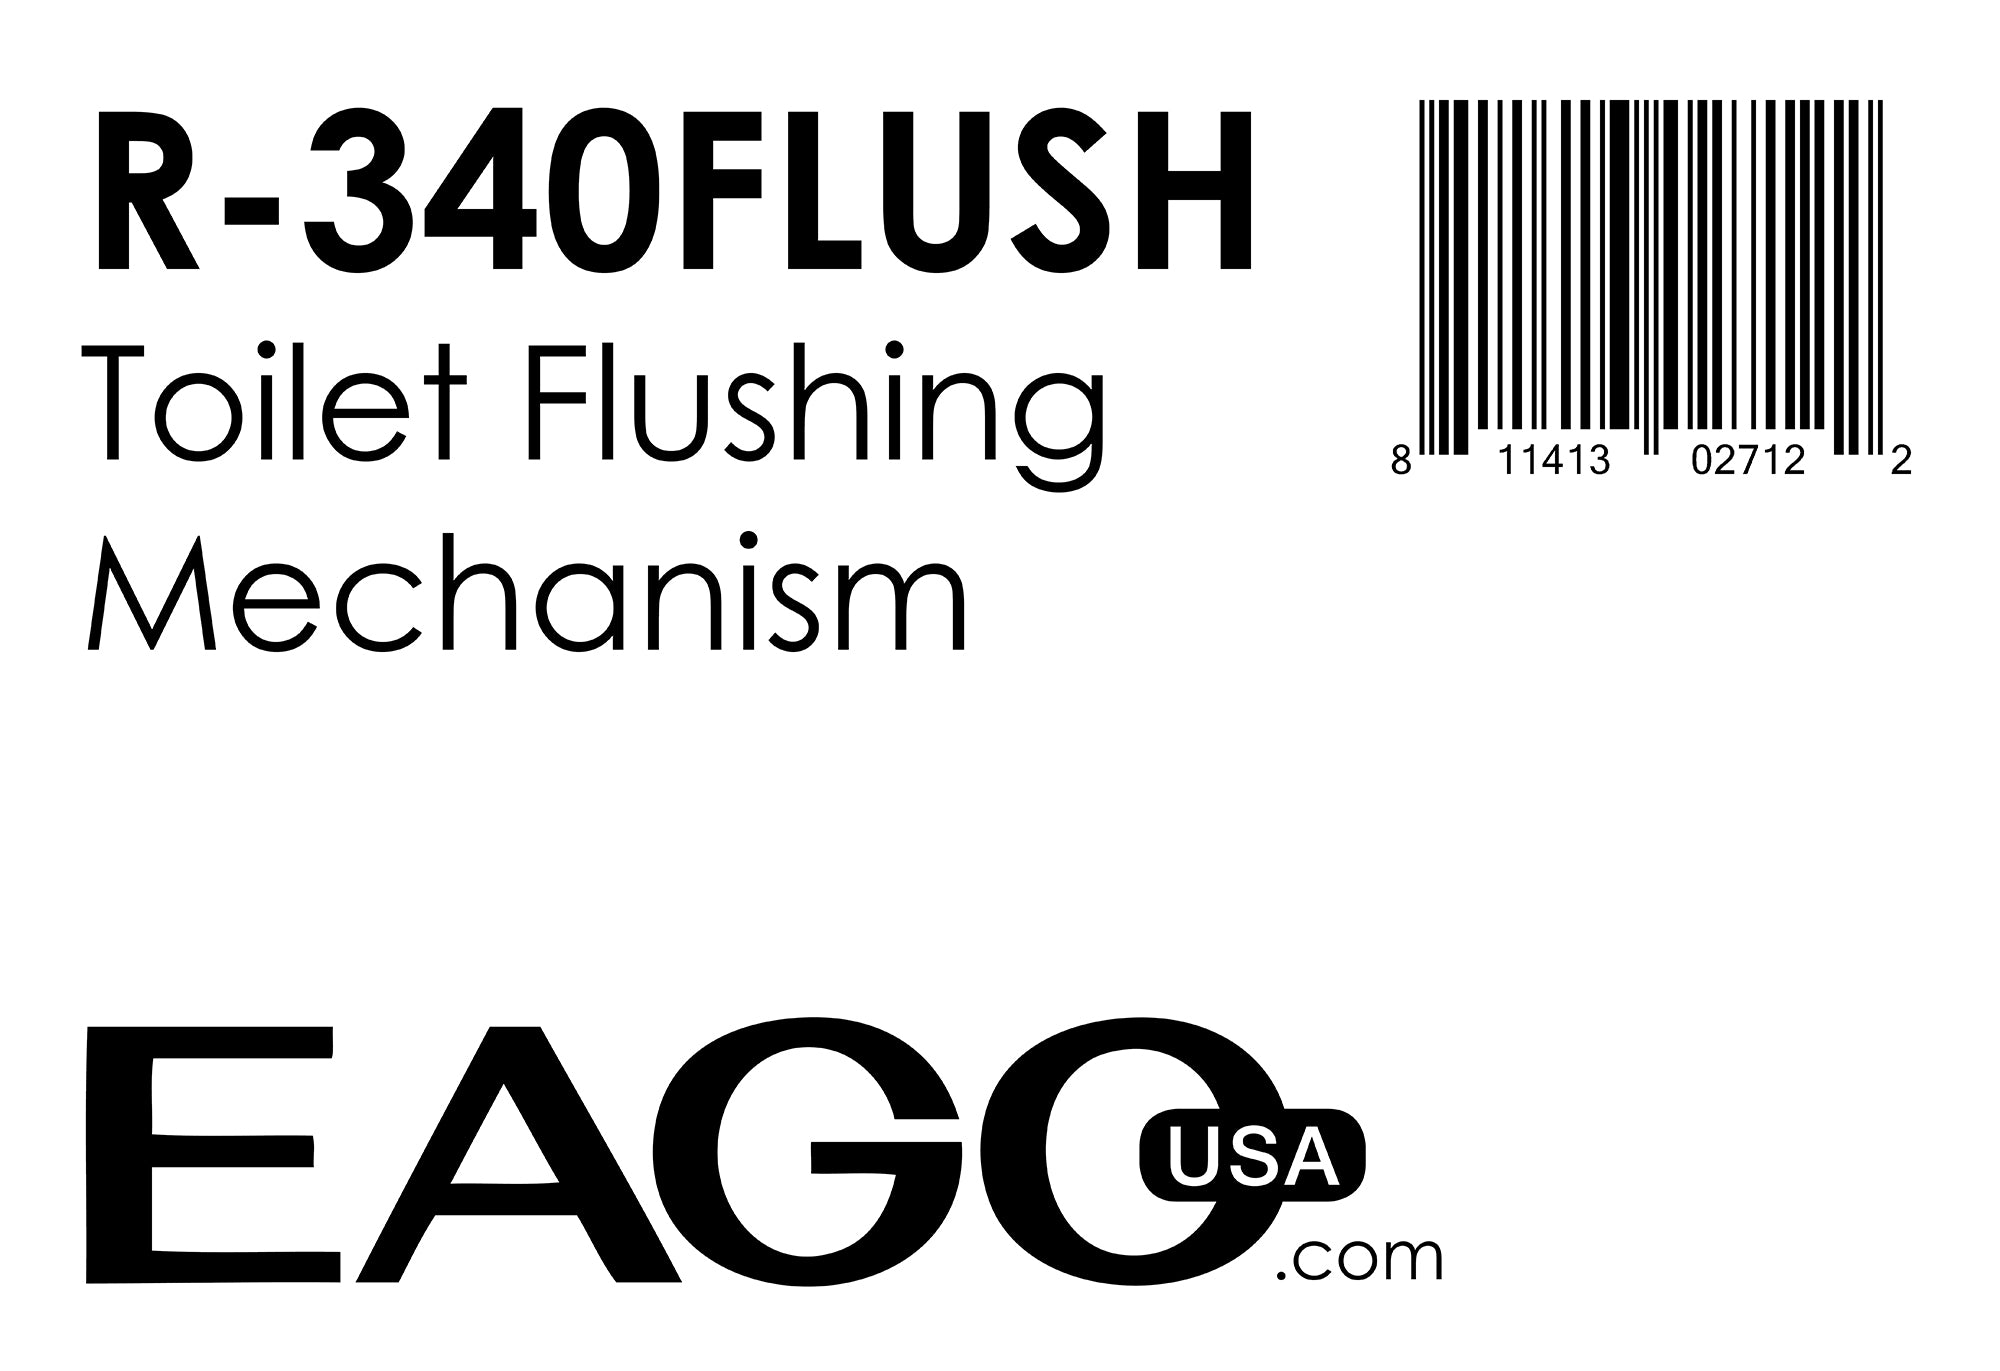 EAGO - Replacement Toilet Flushing Mechanism for TB340 | R-340FLUSH